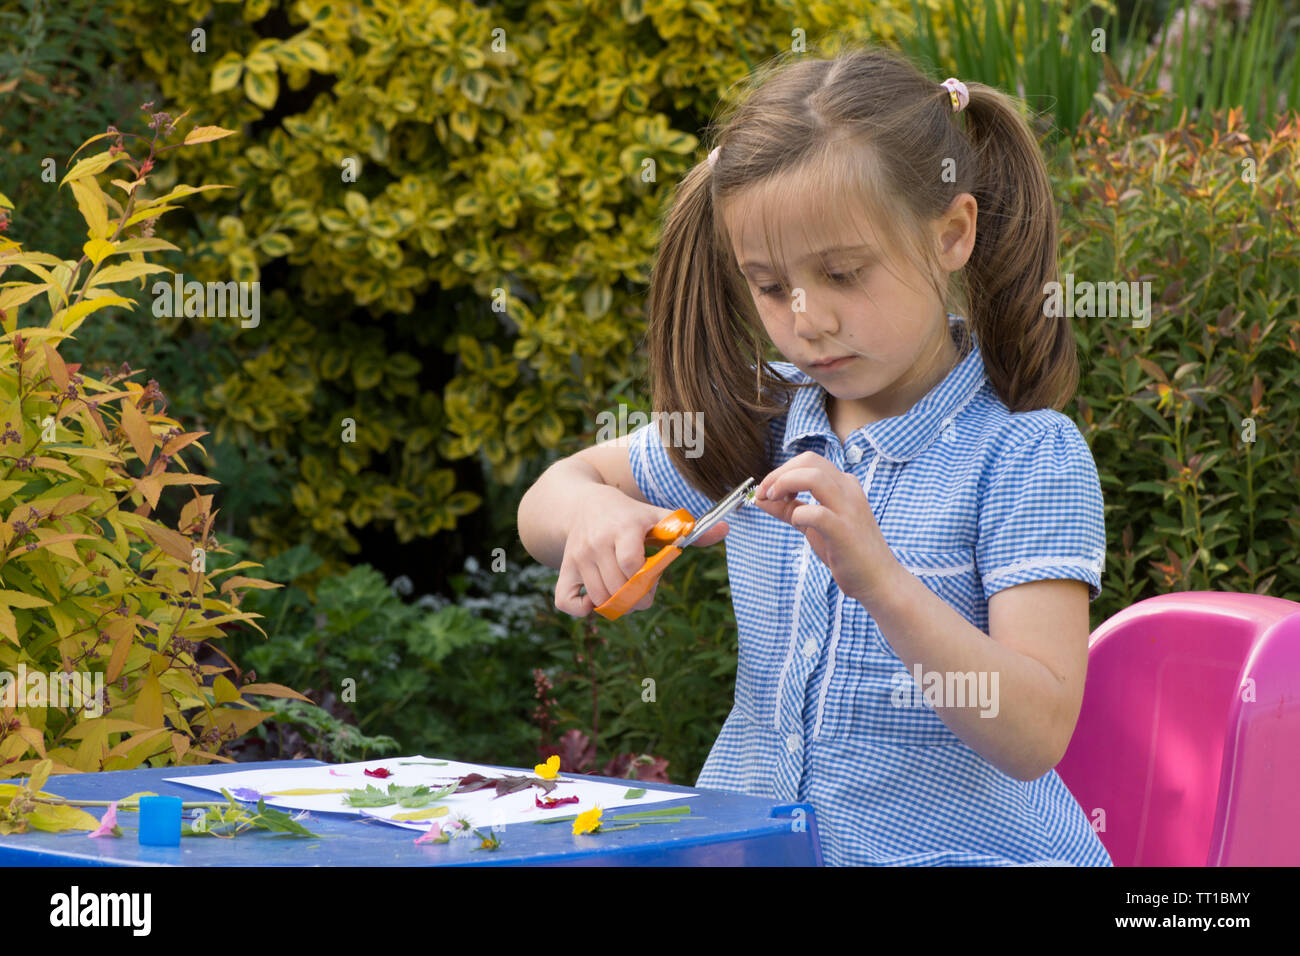 Acht Jahre alten Mädchen in Schuluniform Kleid in den Garten, macht ein Bild von Blumen und Blättern auf Papier geklebt, Natur, Kunst, Handwerk, mit einer Schere Stockfoto